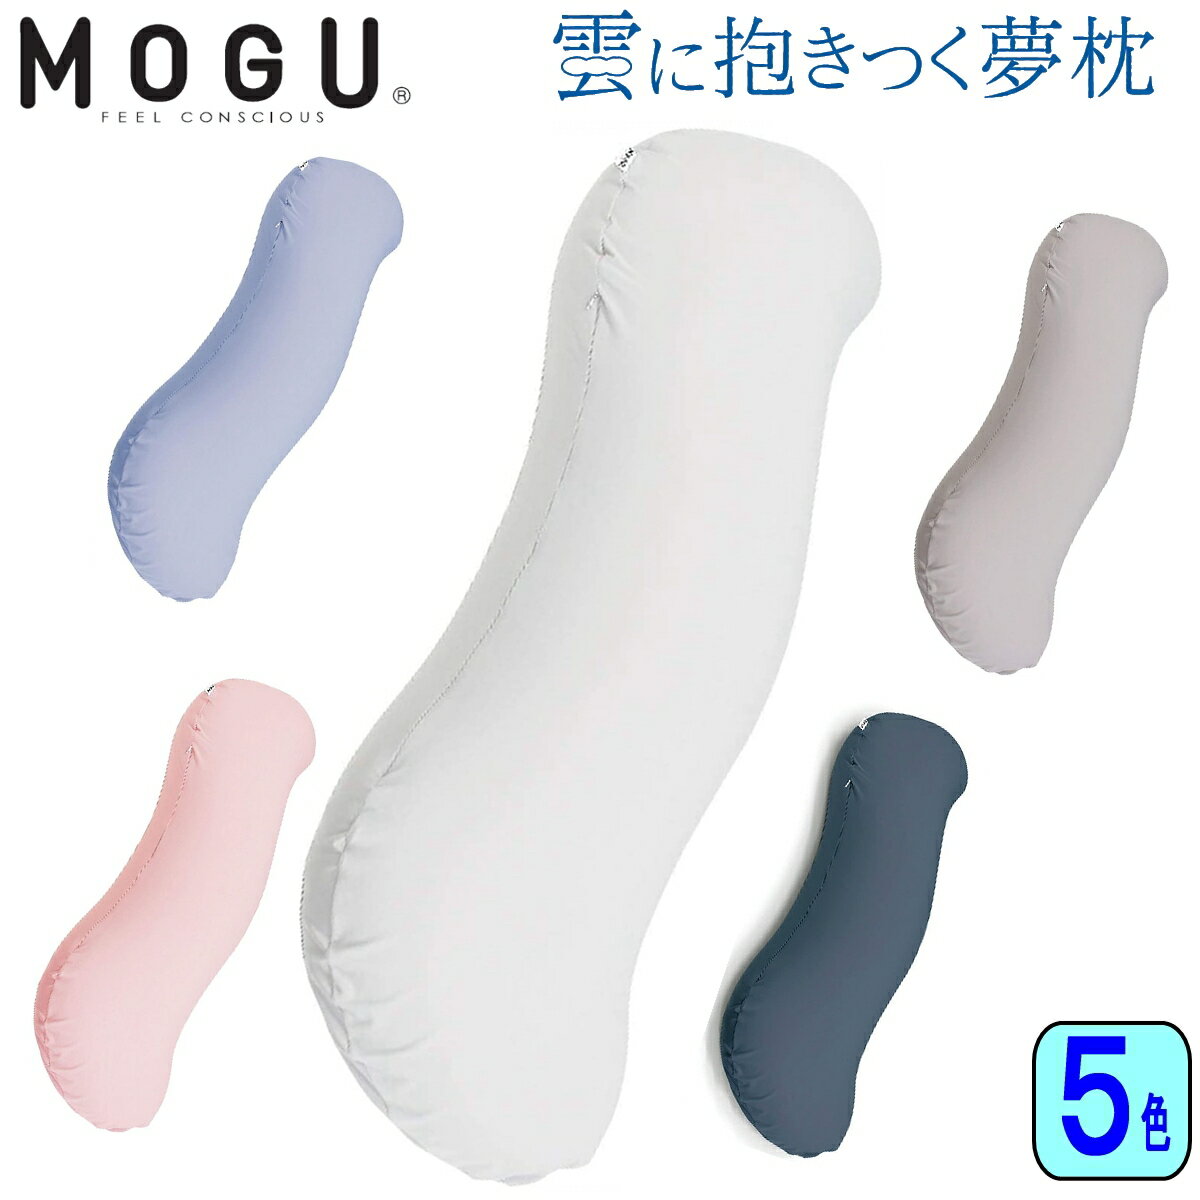 【あす楽】MOGU モグ 雲に抱きつく夢枕 カバー付き 抱き枕 日本製 パウダービーズ 全5色